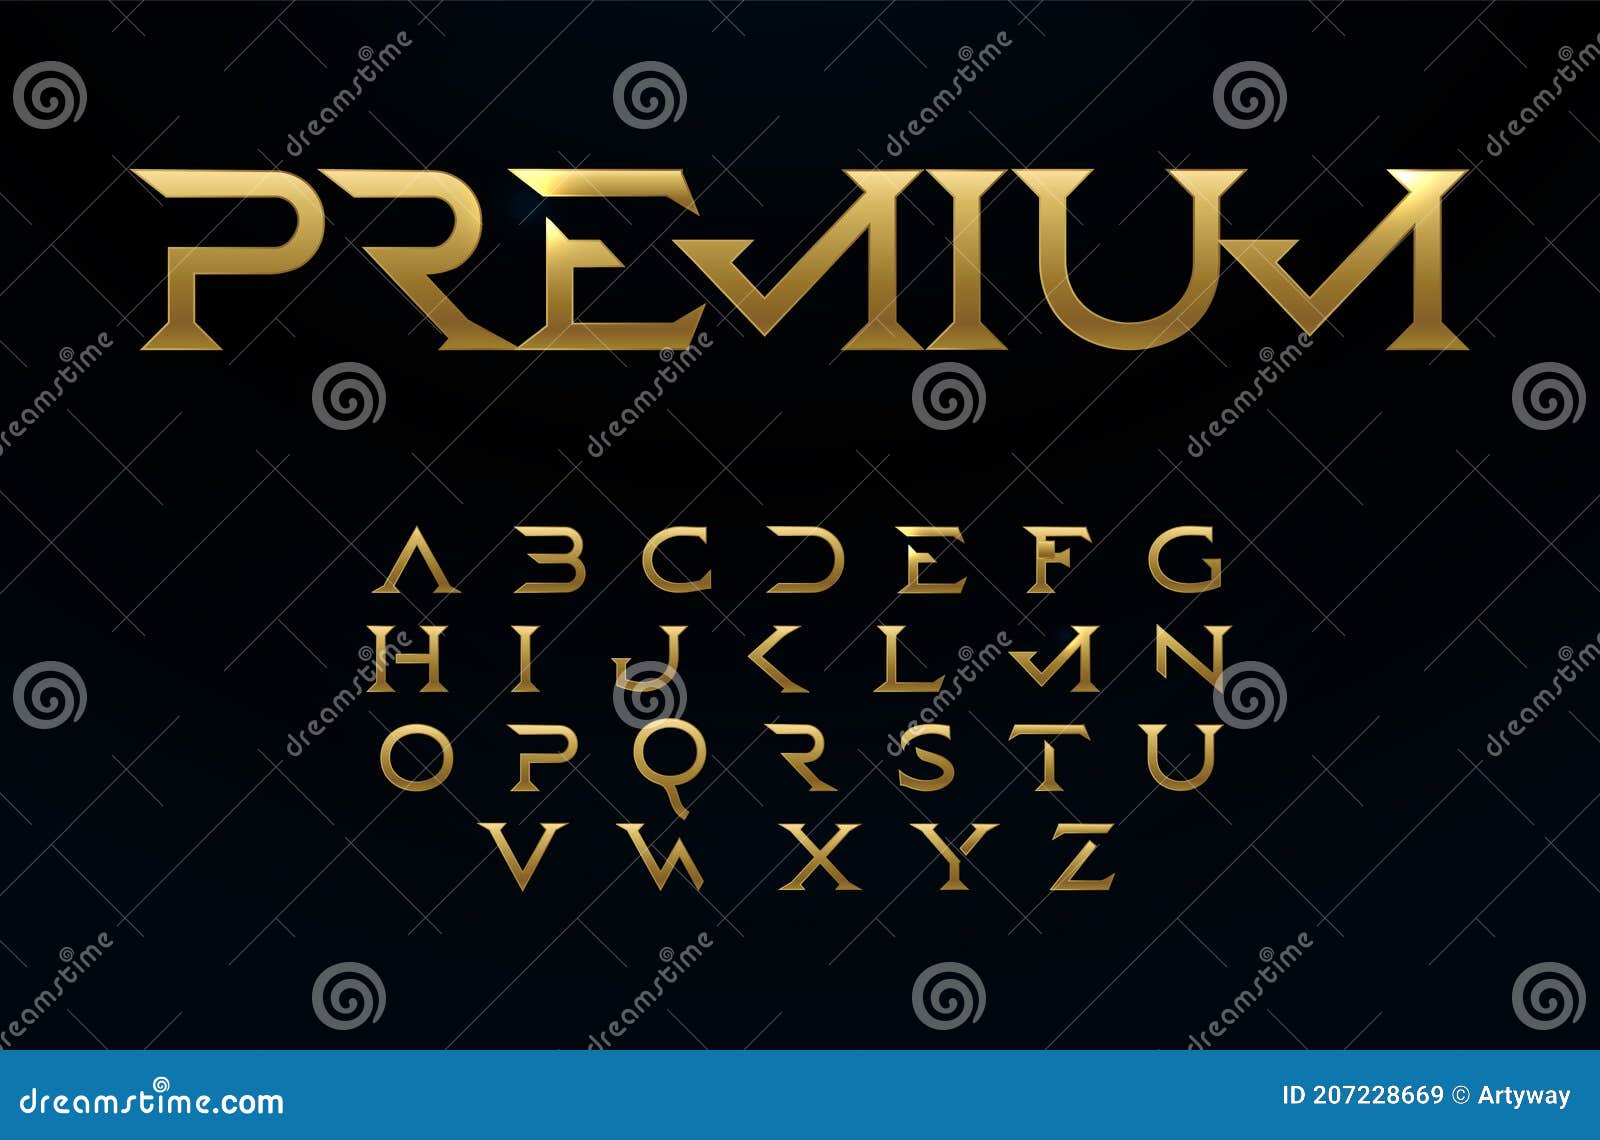 premium alphabet, royal style golden font, modern type for elite logo, headline, monogram, creative lettering and